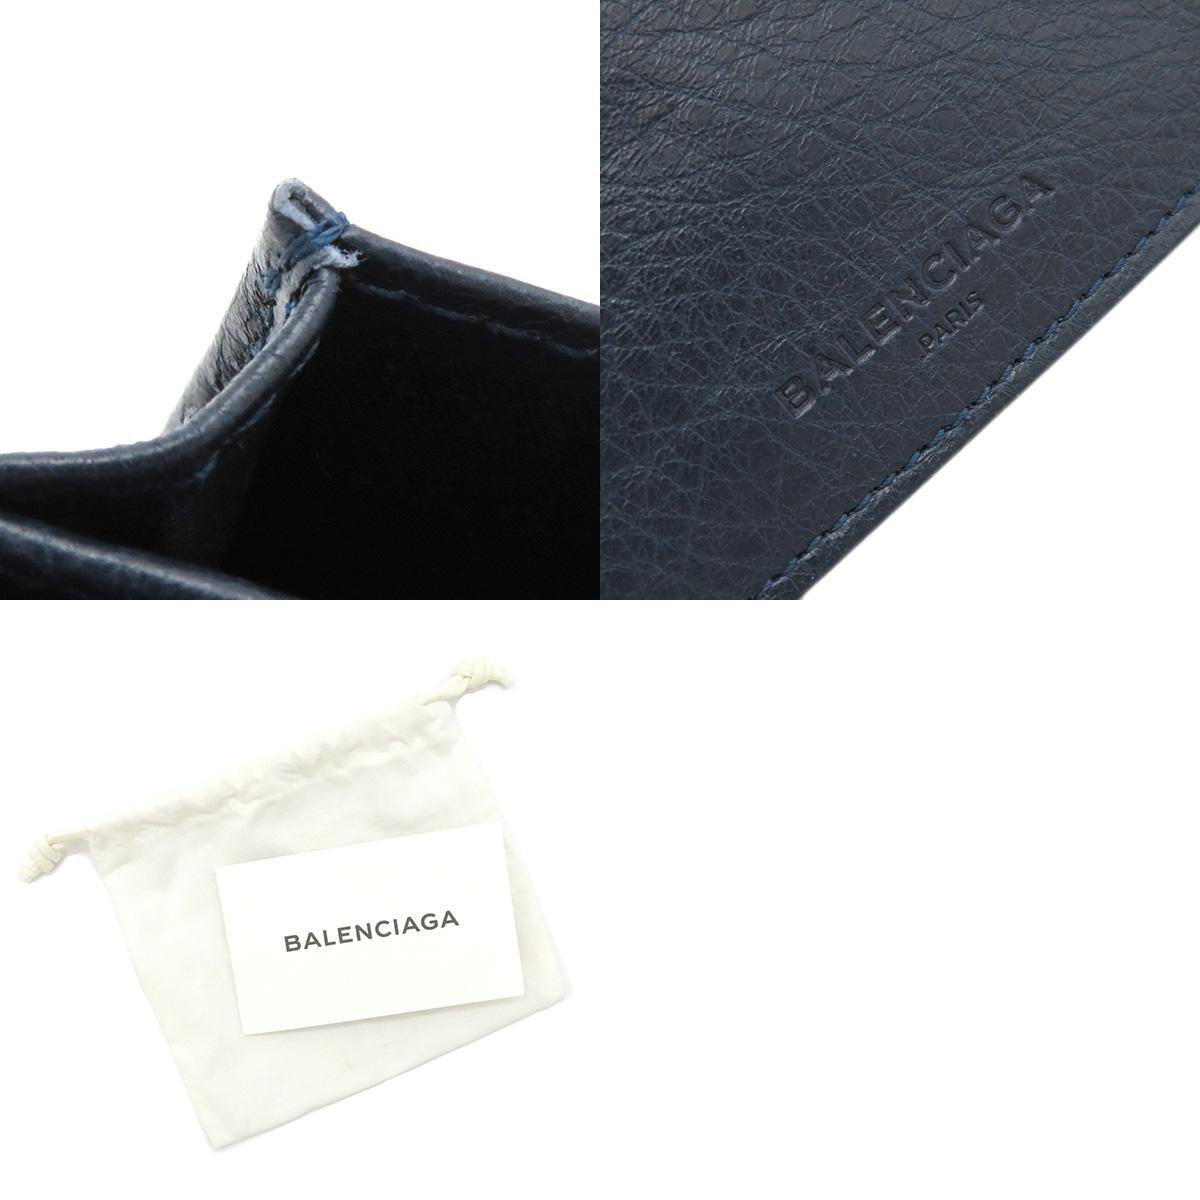  Balenciaga card-case Classic card-case navy leather 310703 navy blue 